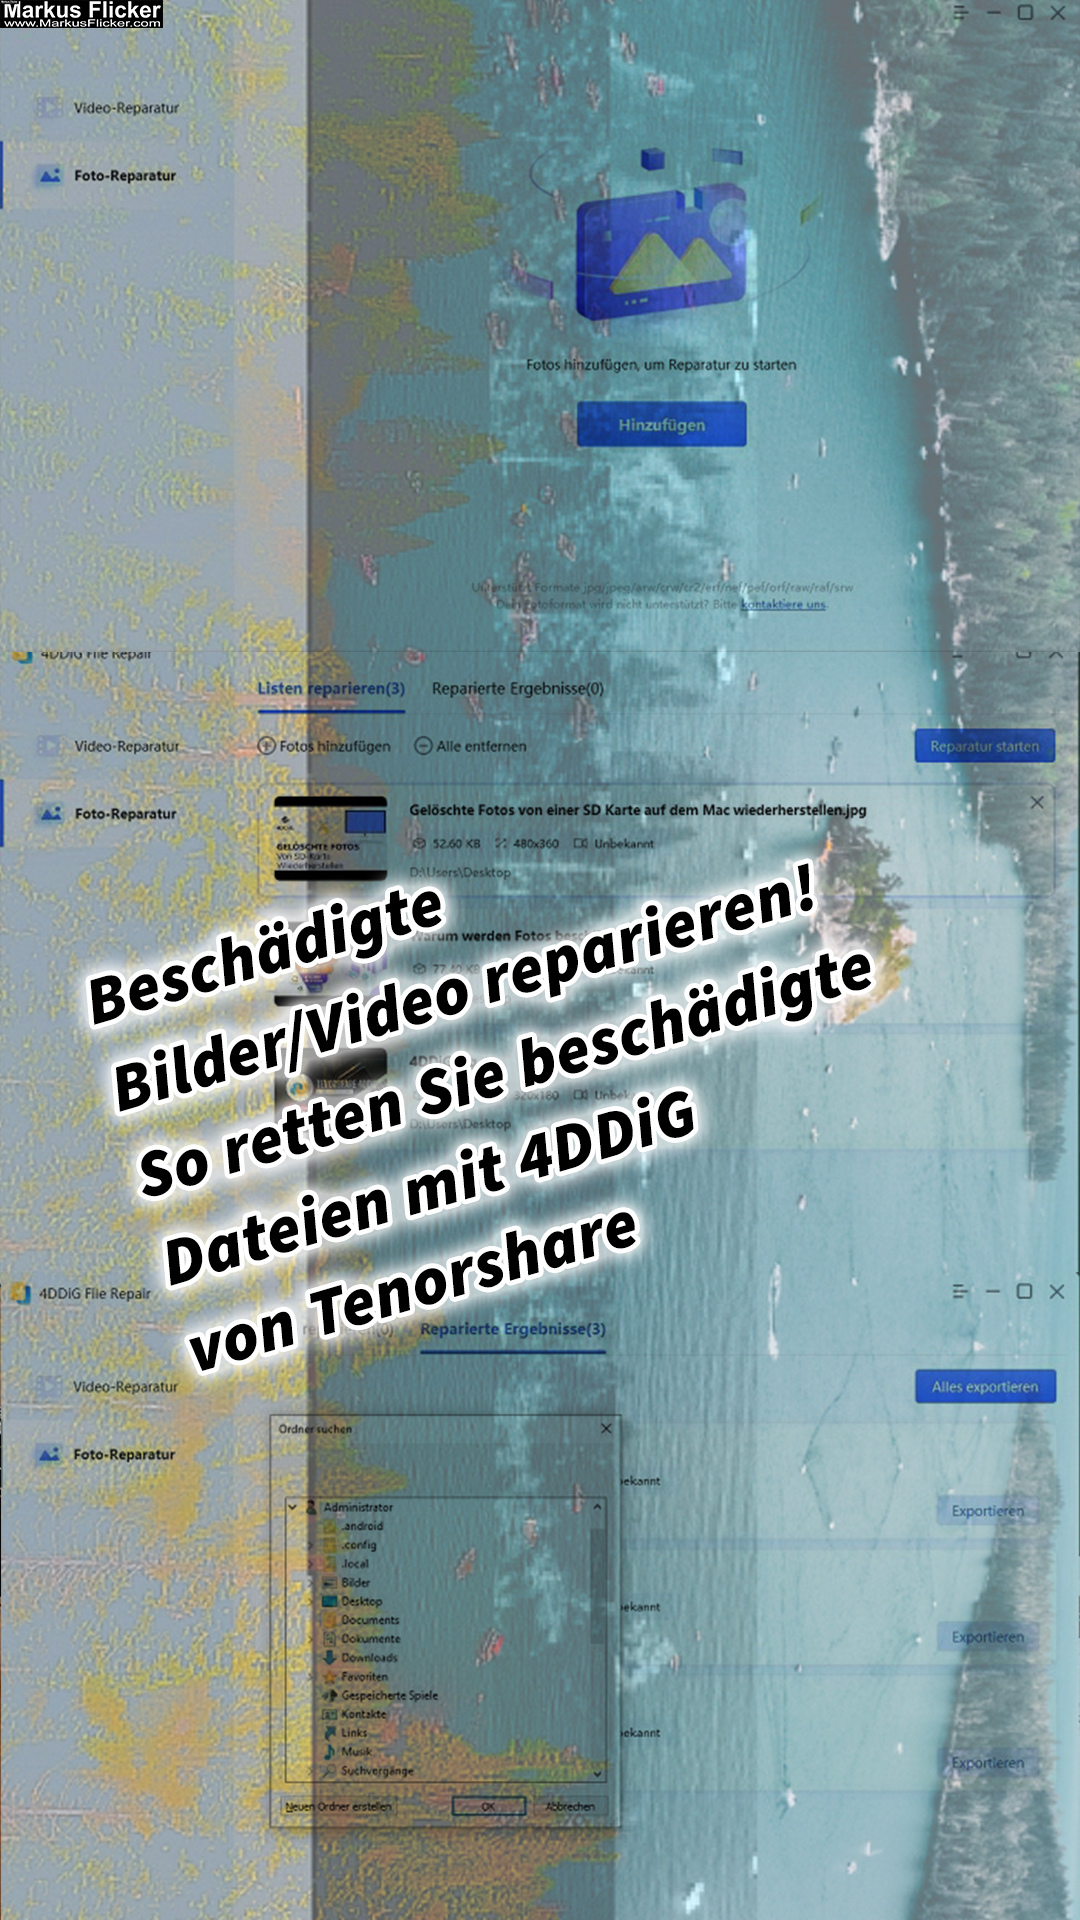 Beschädigte Bilder/Video reparieren – So retten Sie beschädigte Dateien mit 4DDiG von Tenorshare